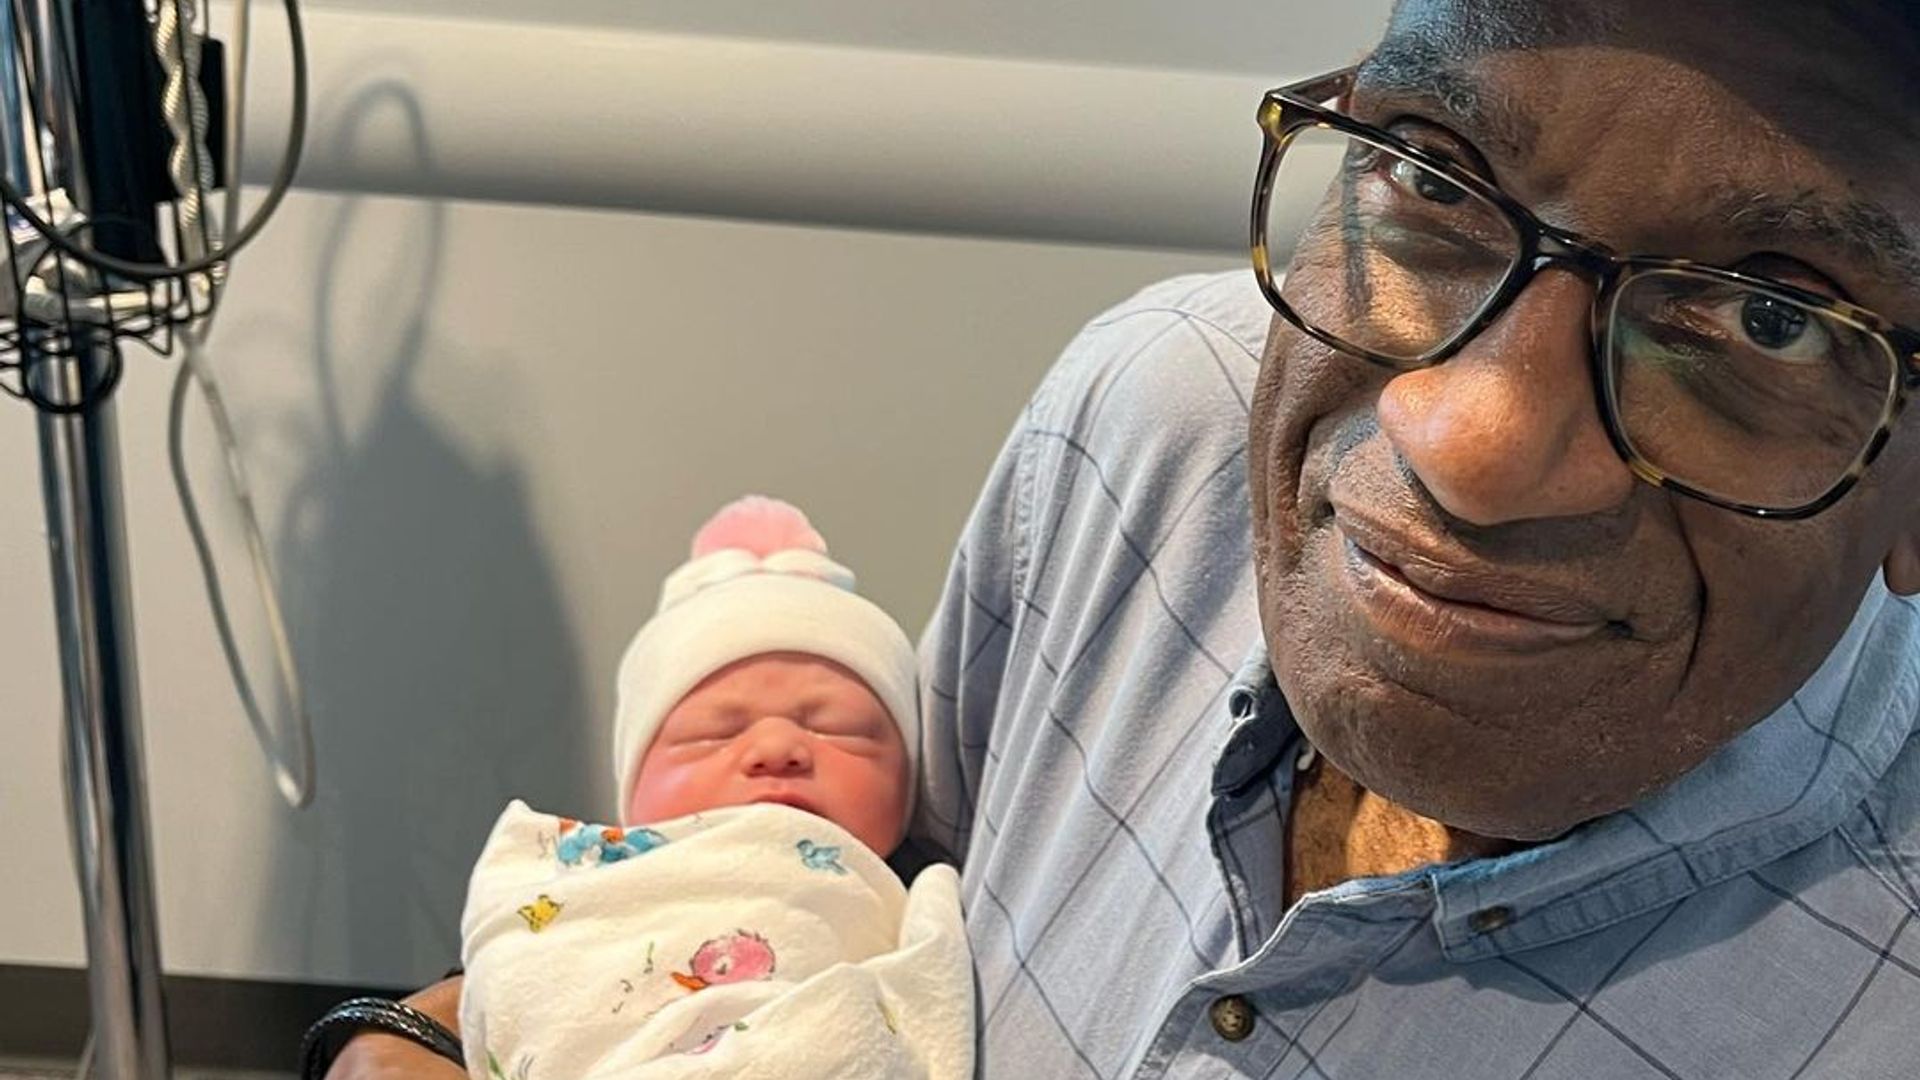 Al Roker dotes over newborn granddaughter Sky Clara Laga in first photos